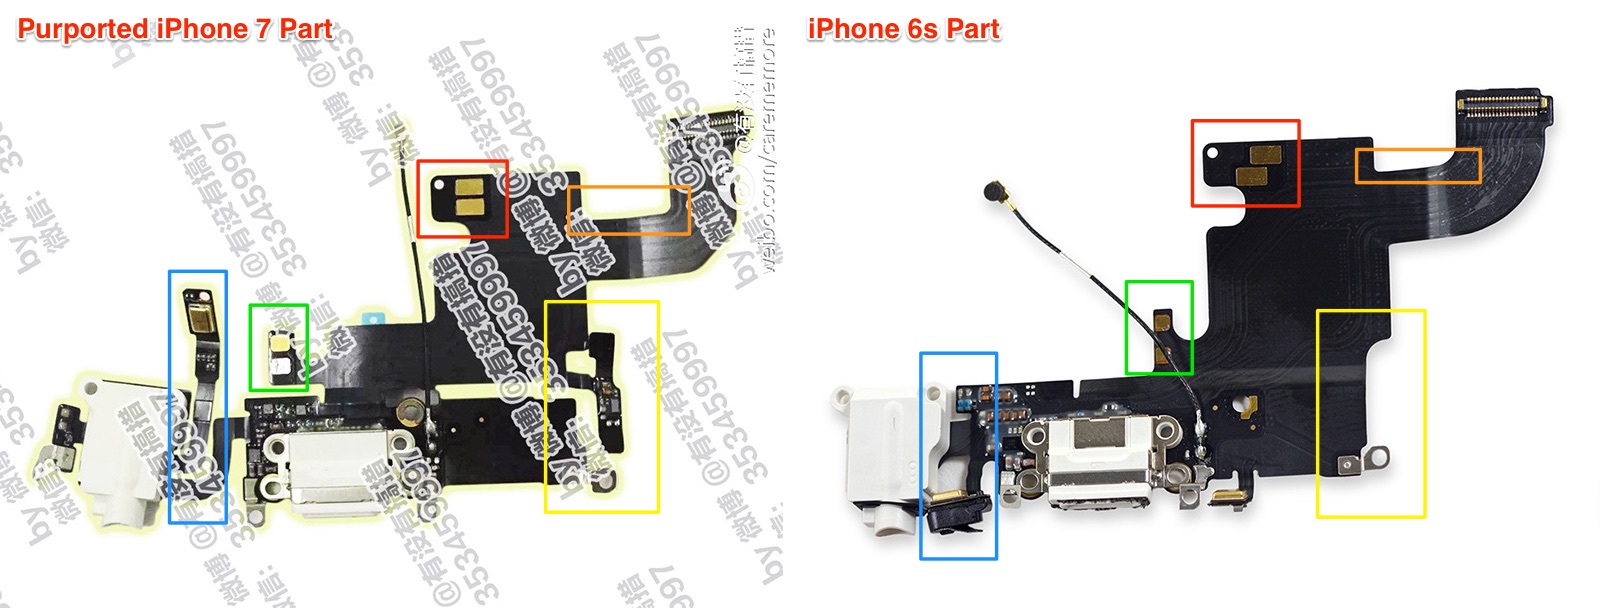 Apple может оставить аудиоразъем в iPhone 7